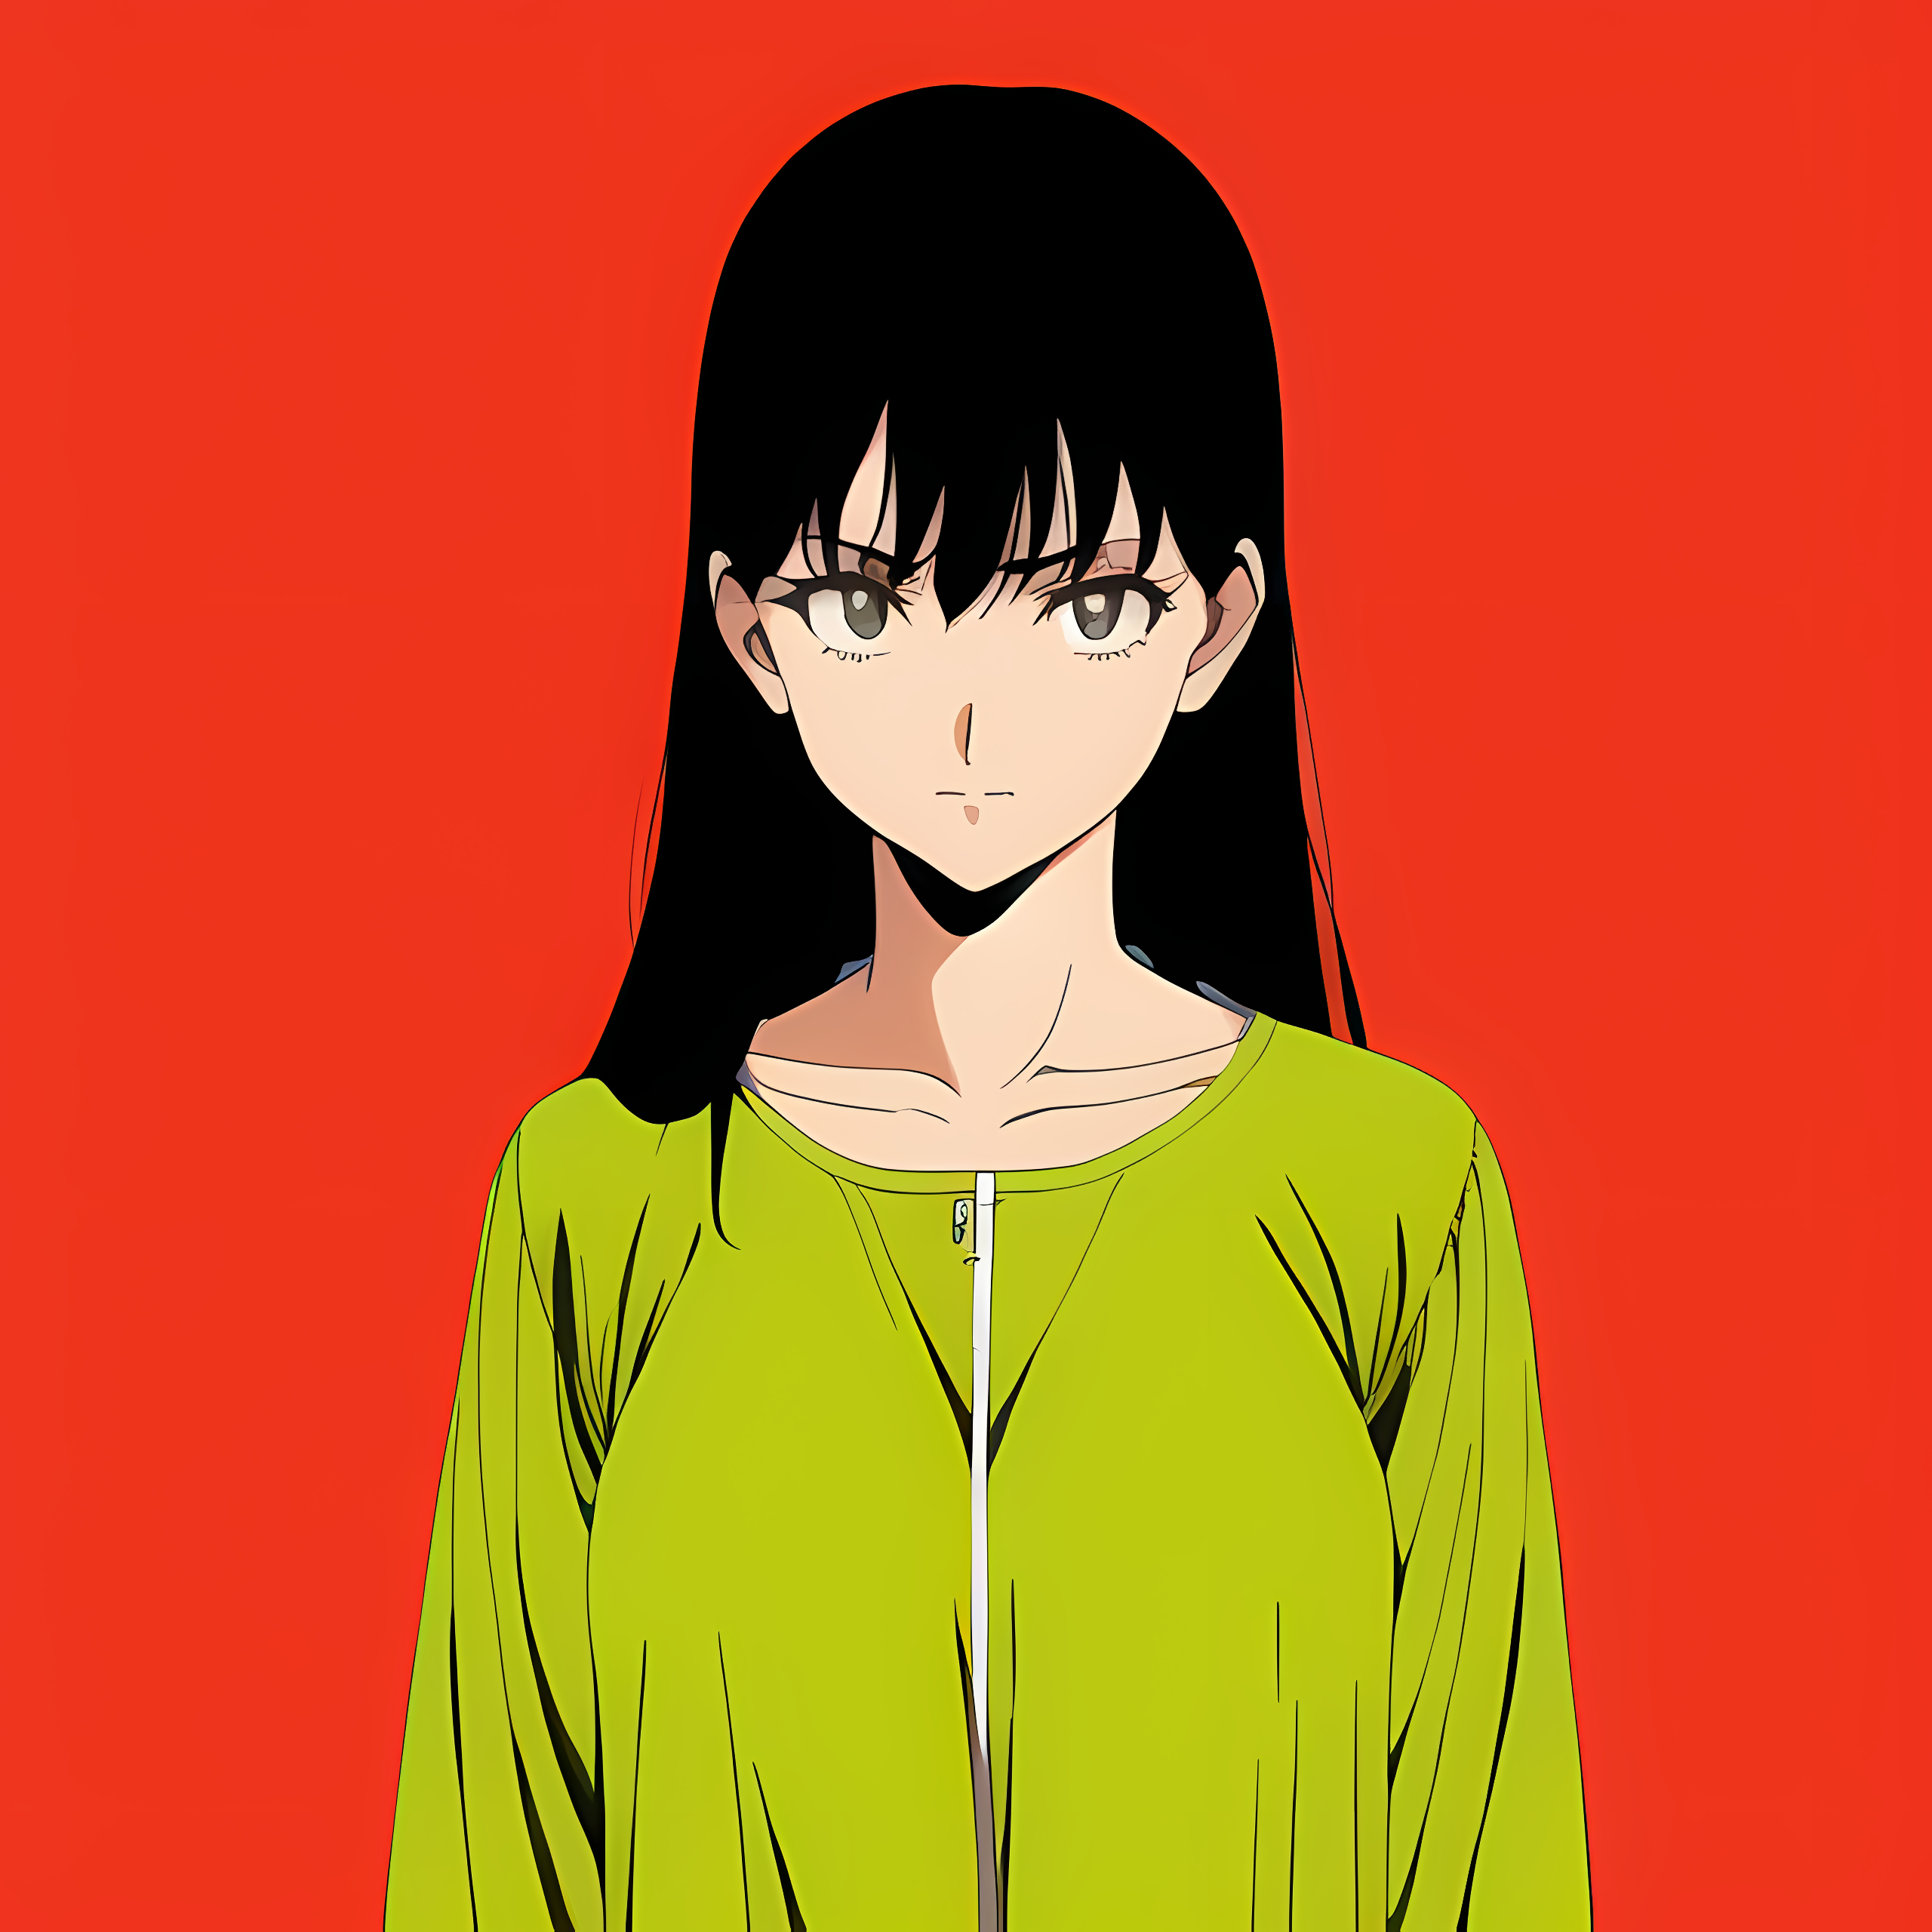 Novel Ai Anime Girls Simple Background Red Background Minimalism 2560x2560